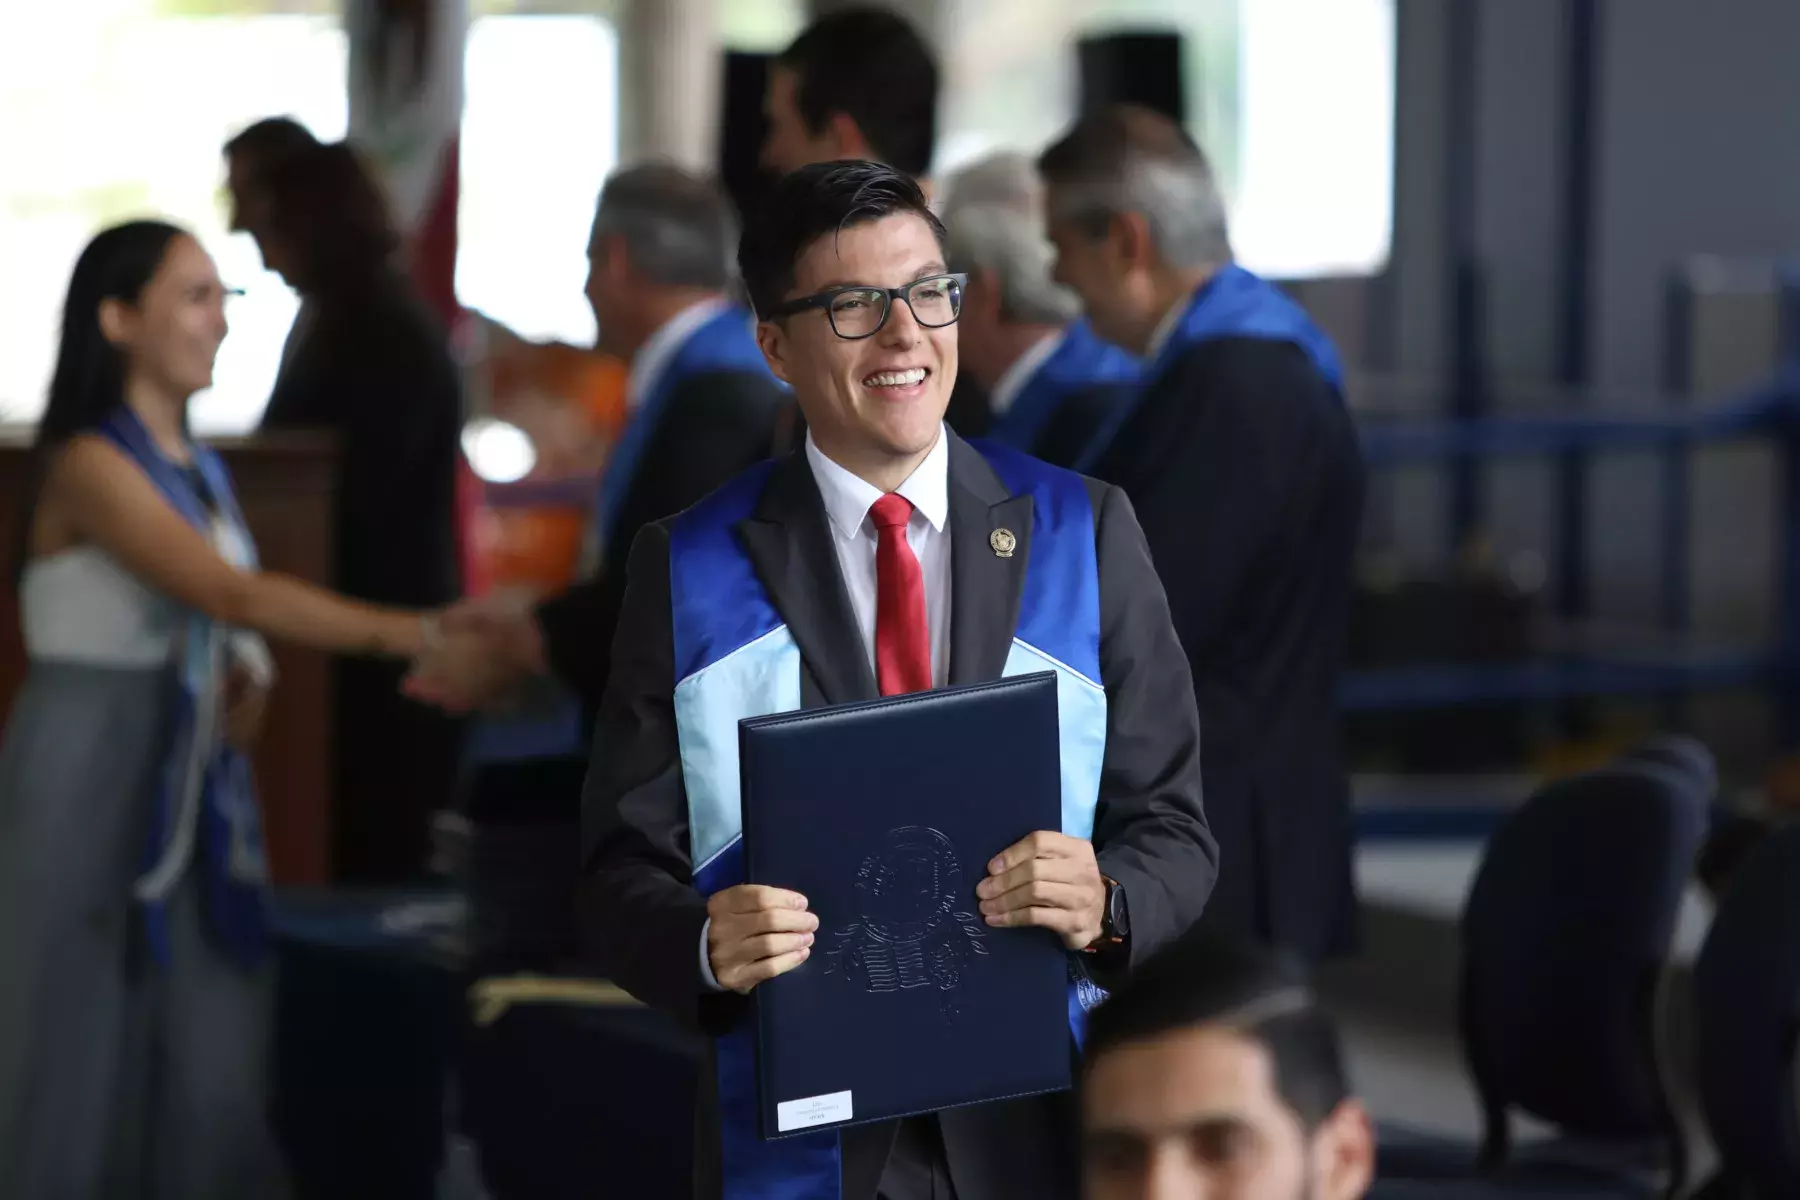 Graduación Mayo 2019